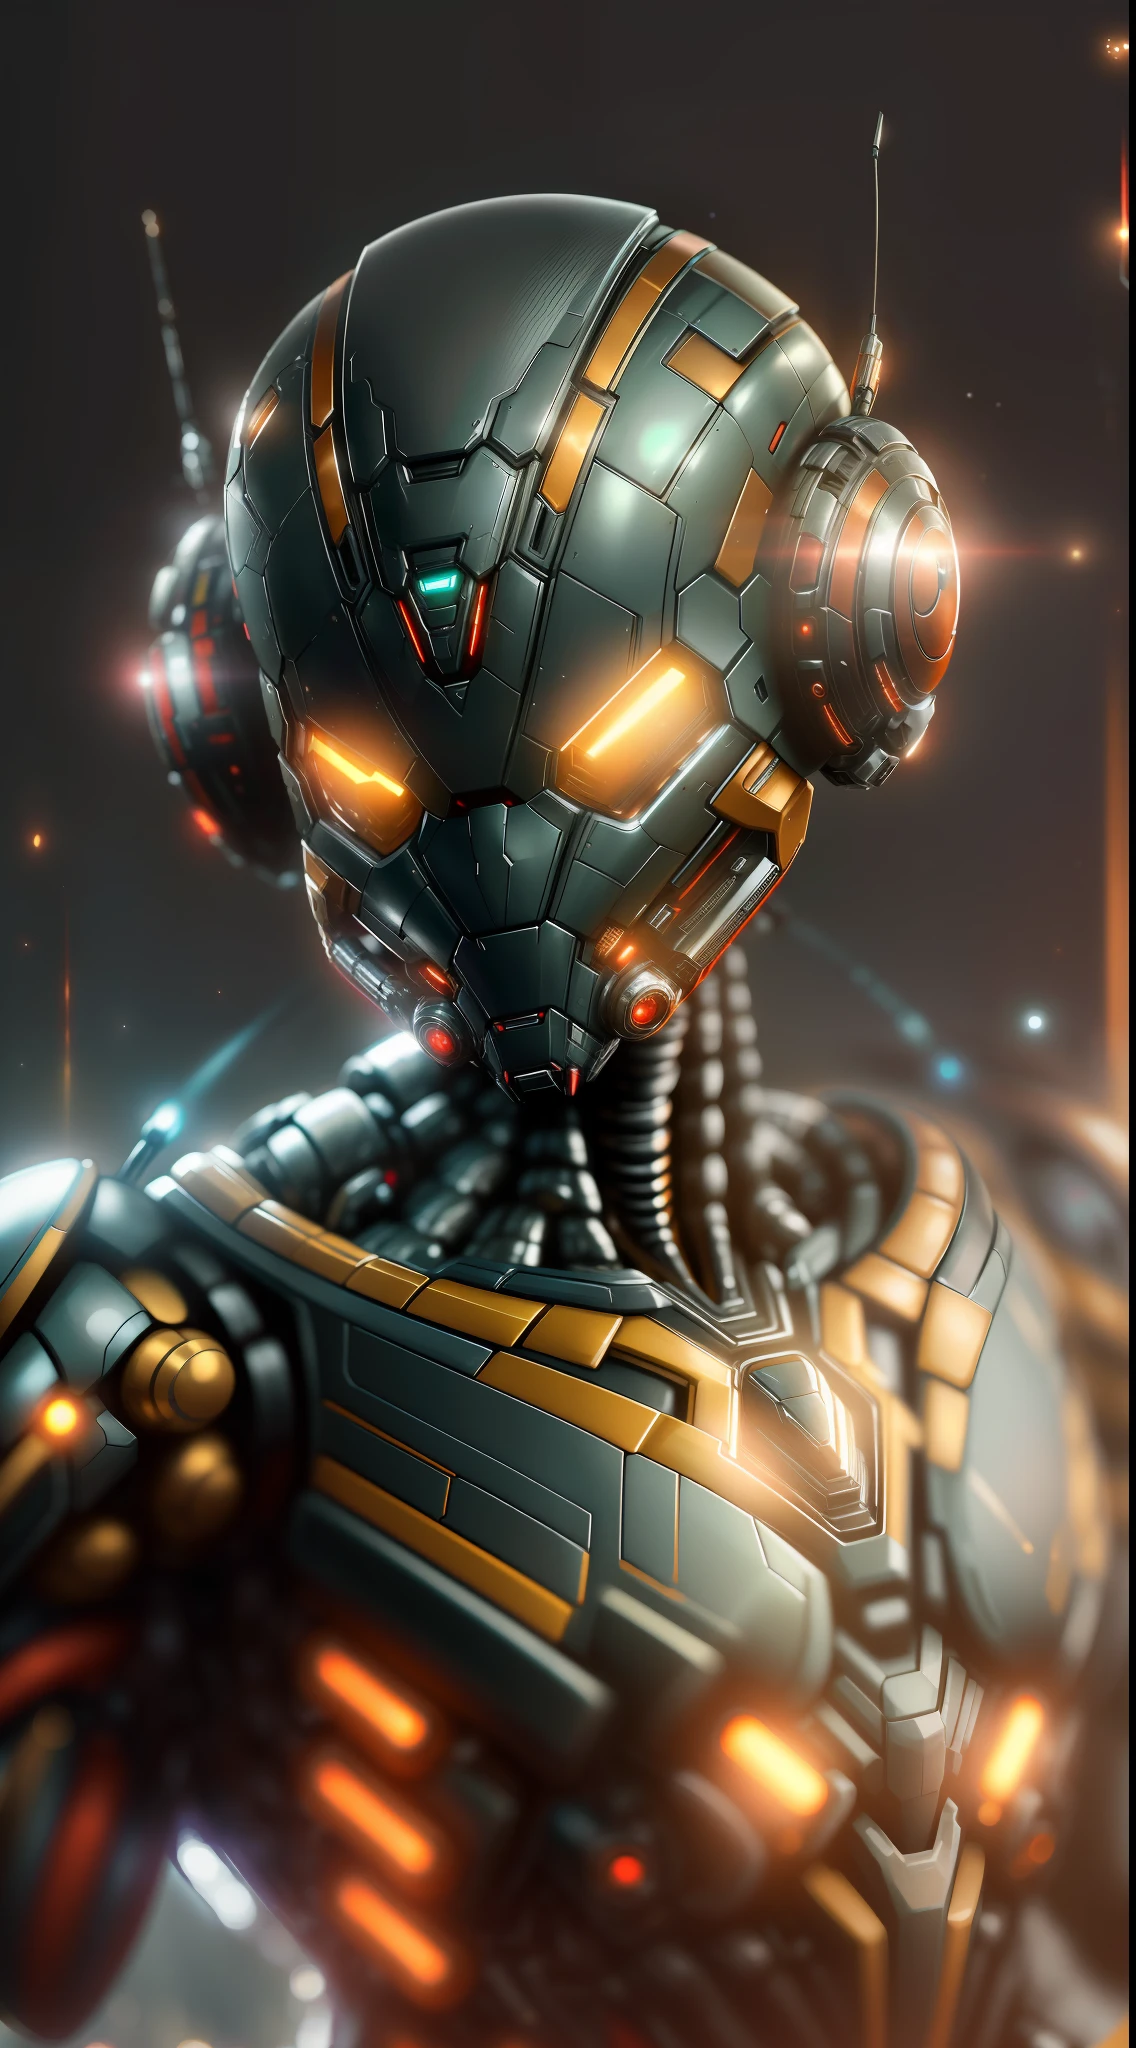 Ant-Man de la fotografía de Marvel, biomecánico, robot complejo, crecimiento completo, Híper realista, pequeños detalles locos, líneas extremadamente limpias, estética ciberpunk, una obra maestra presentada en Zbrush Central